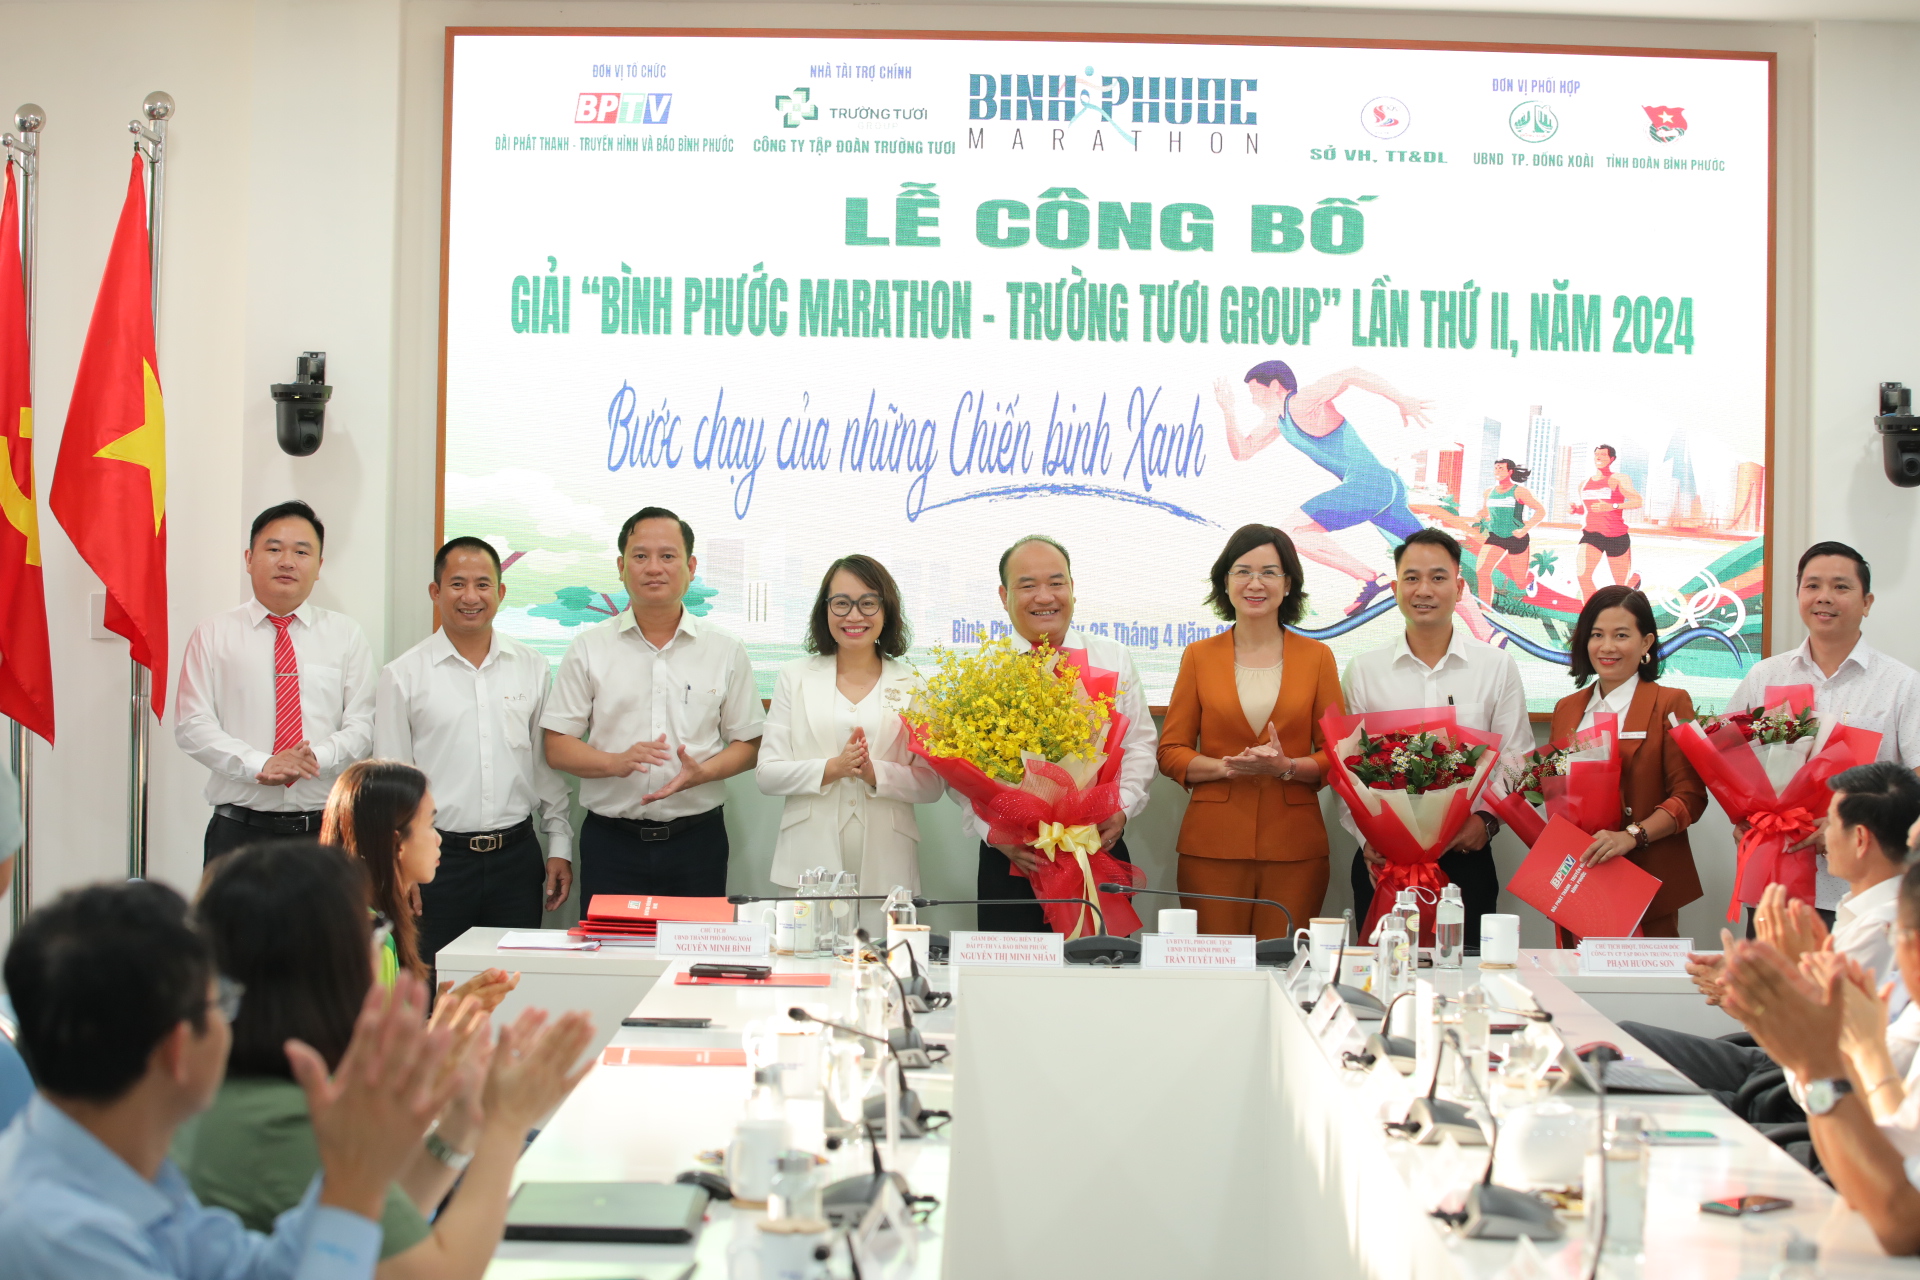 Tập đoàn Trường Tươi tiếp tục đồng hành cùng giải Bình Phước Marathon – Trường Tươi Group lần thứ II năm 2024